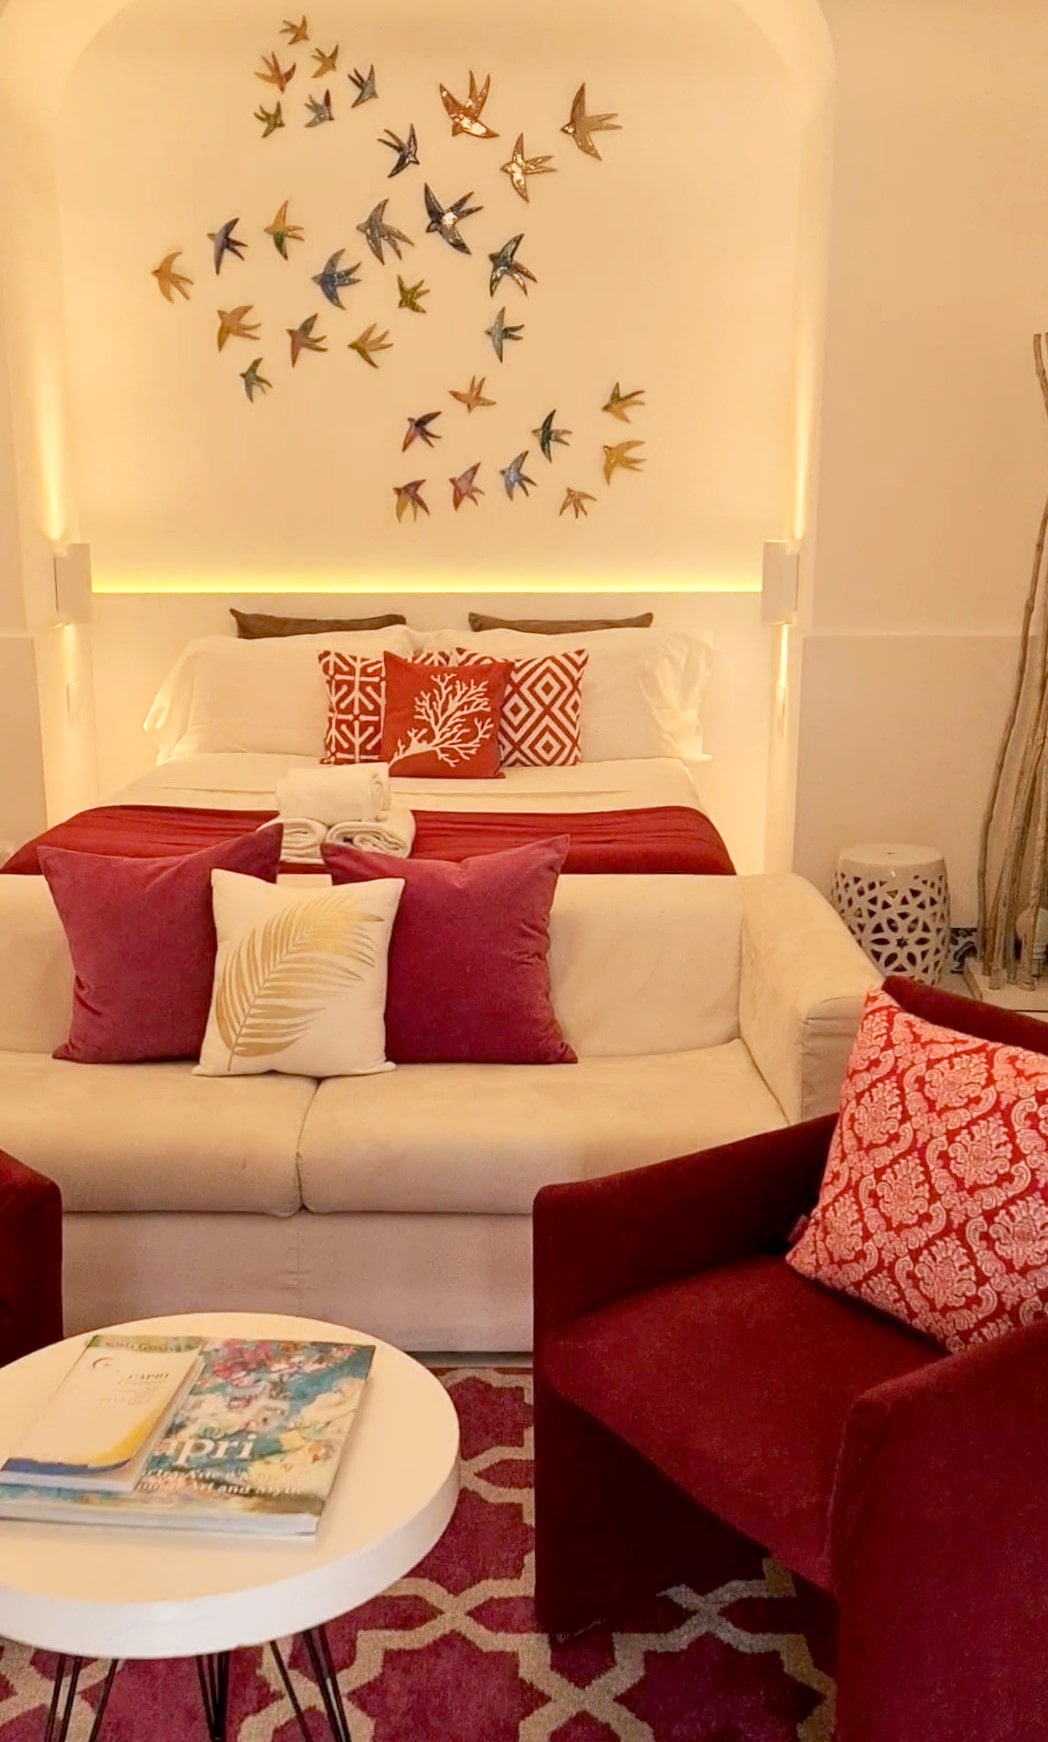 Una foto di una suite a Capri, con un grande letto matrimoniale con tanti cuscini rossi, appesi alla parete alle spalle del letto tante rondini in ceramica, mentre in primo piano c'è una poltroncina di velluto e un tavolinetto bianco con alcune riviste sull'isola